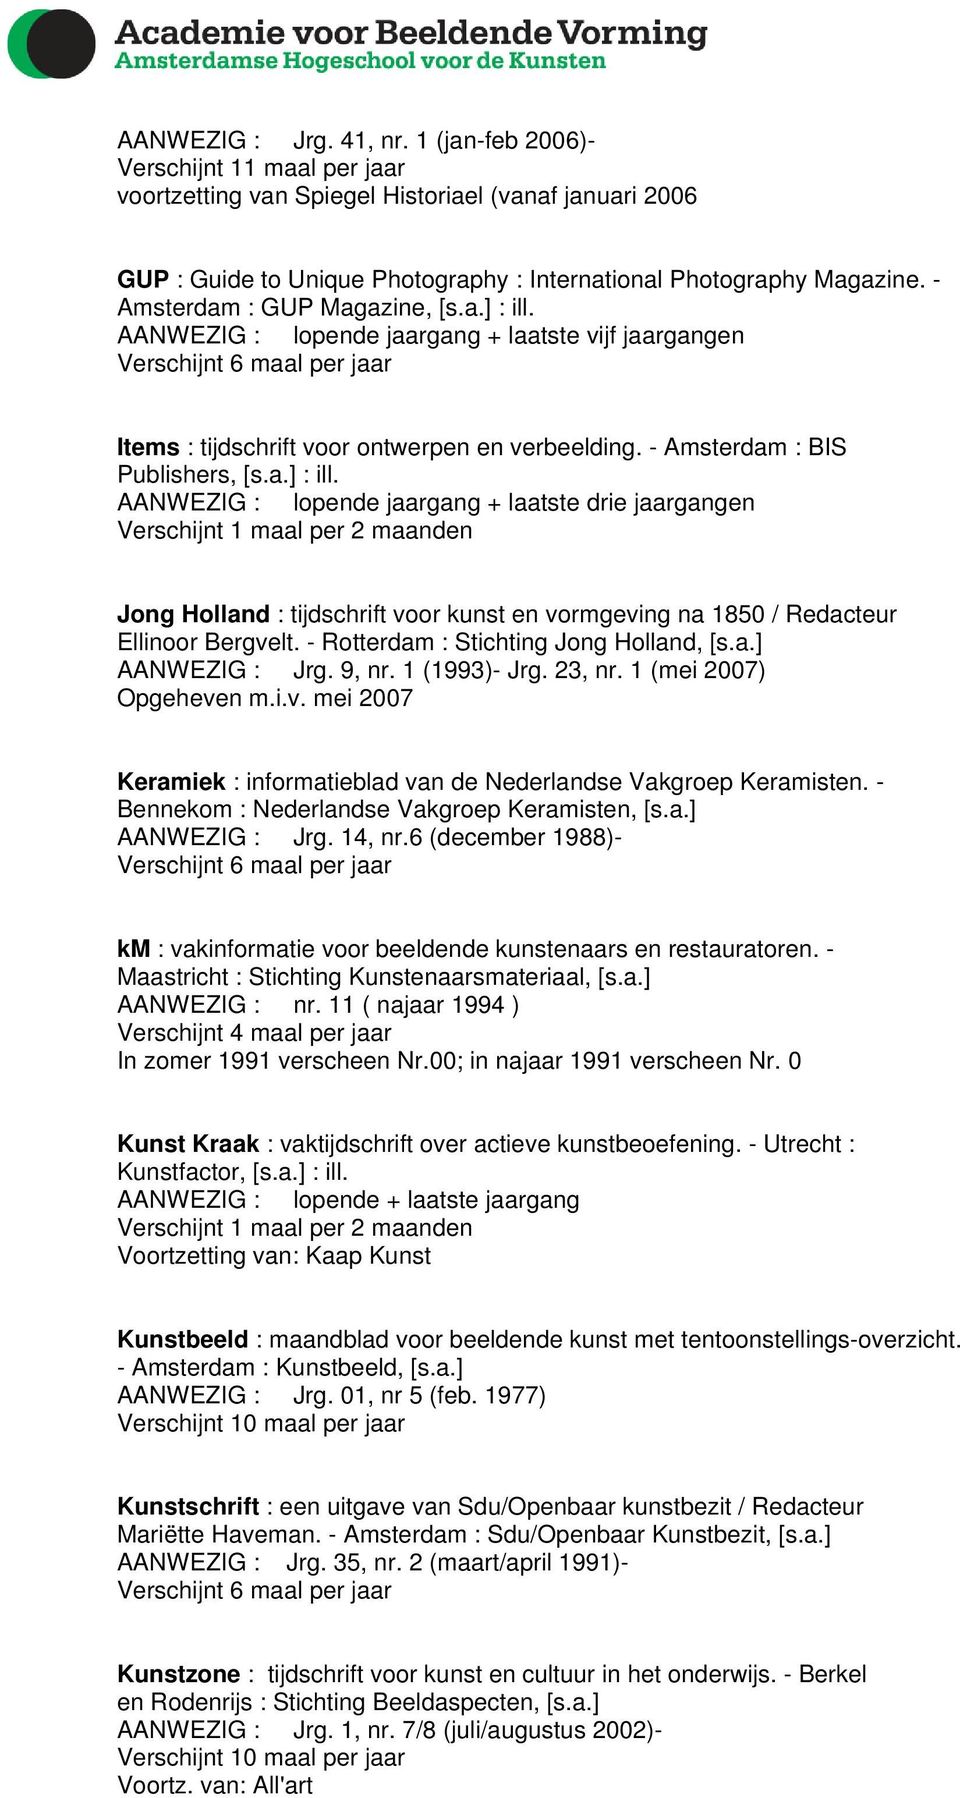 - Rotterdam : Stichting Jong Holland, [s.a.] AANWEZIG : Jrg. 9, nr. 1 (1993)- Jrg. 23, nr. 1 (mei 2007) Opgeheven m.i.v. mei 2007 Keramiek : informatieblad van de Nederlandse Vakgroep Keramisten.